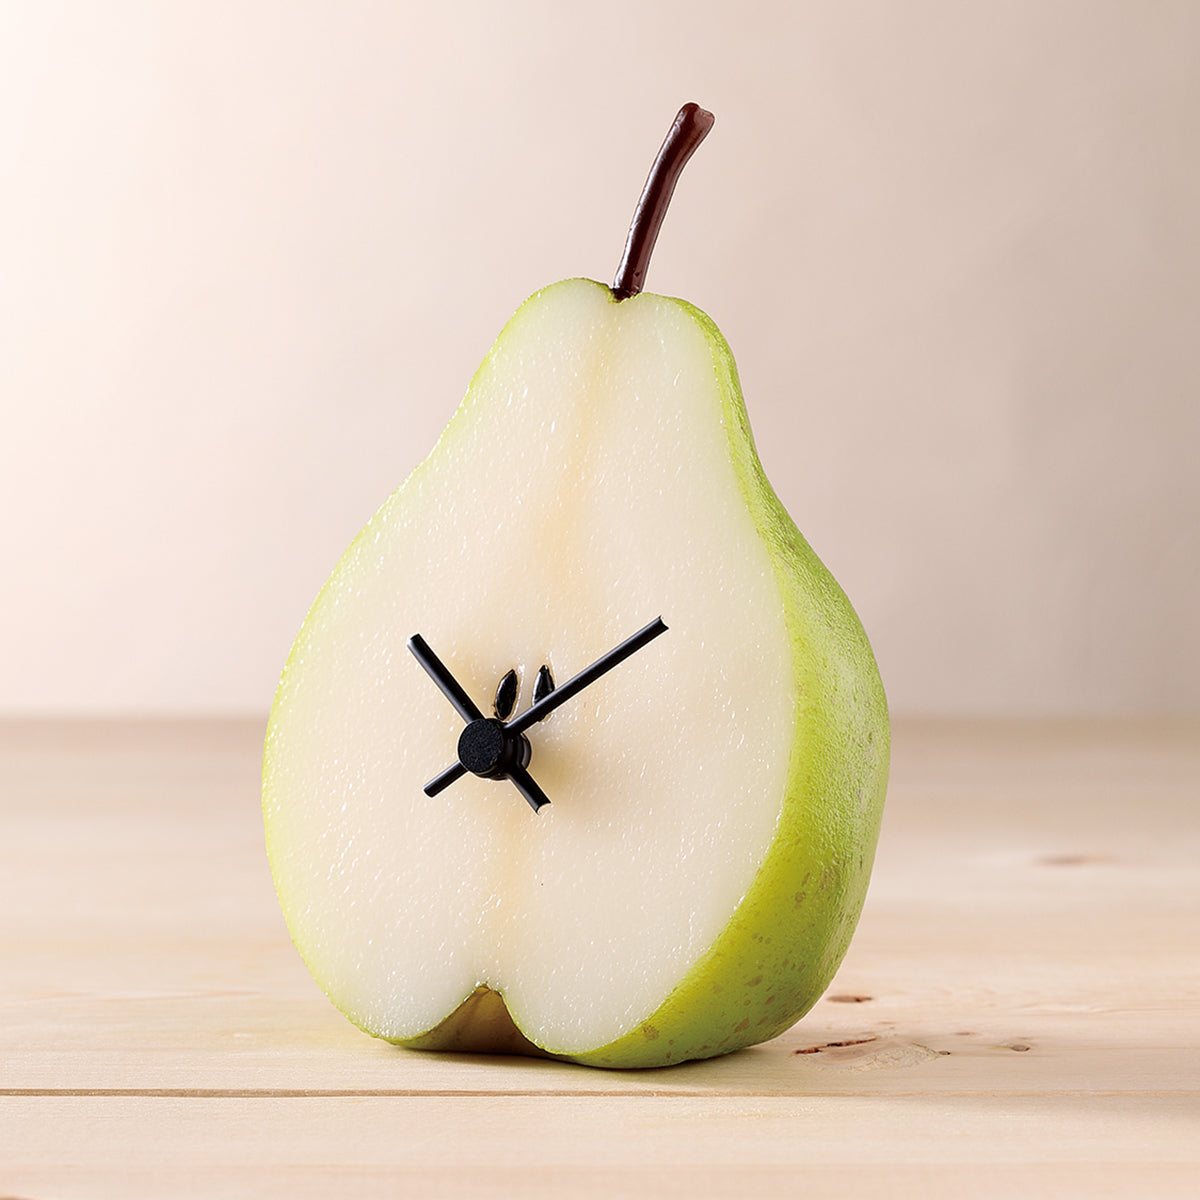 これは元祖食品サンプル屋「Replica Food Clock  ラ・フランス」の商品写真斜めカットです。